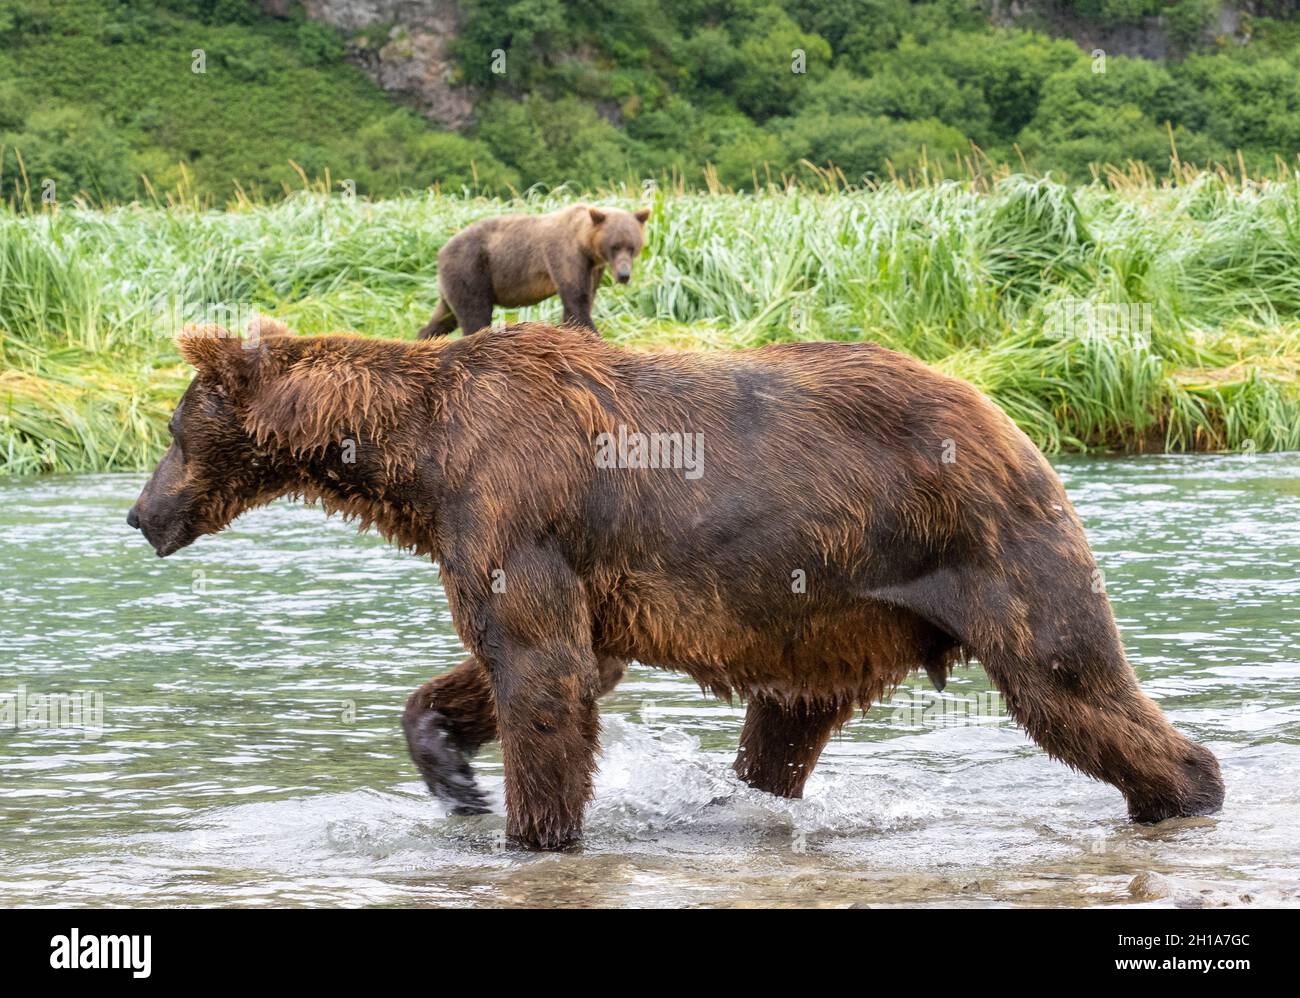 A Brown or Grizzly Bear, Katmai National Park, Alaska. Stock Photo